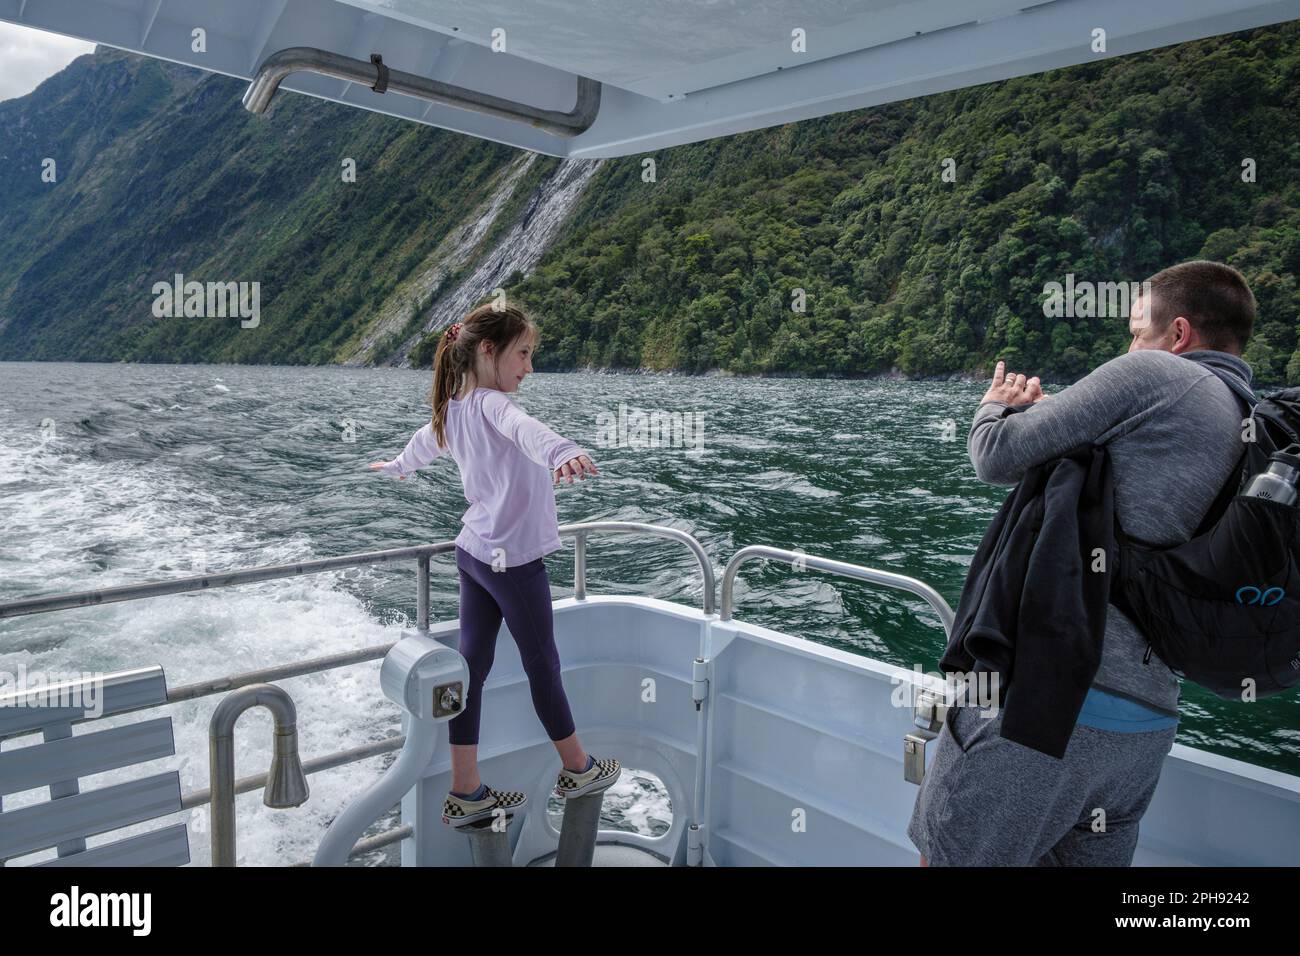 Una ragazza che fa una posa 'Titanic' per una fotografia durante un viaggio in barca a Milford Sound, South Island, Nuova Zelanda Foto Stock